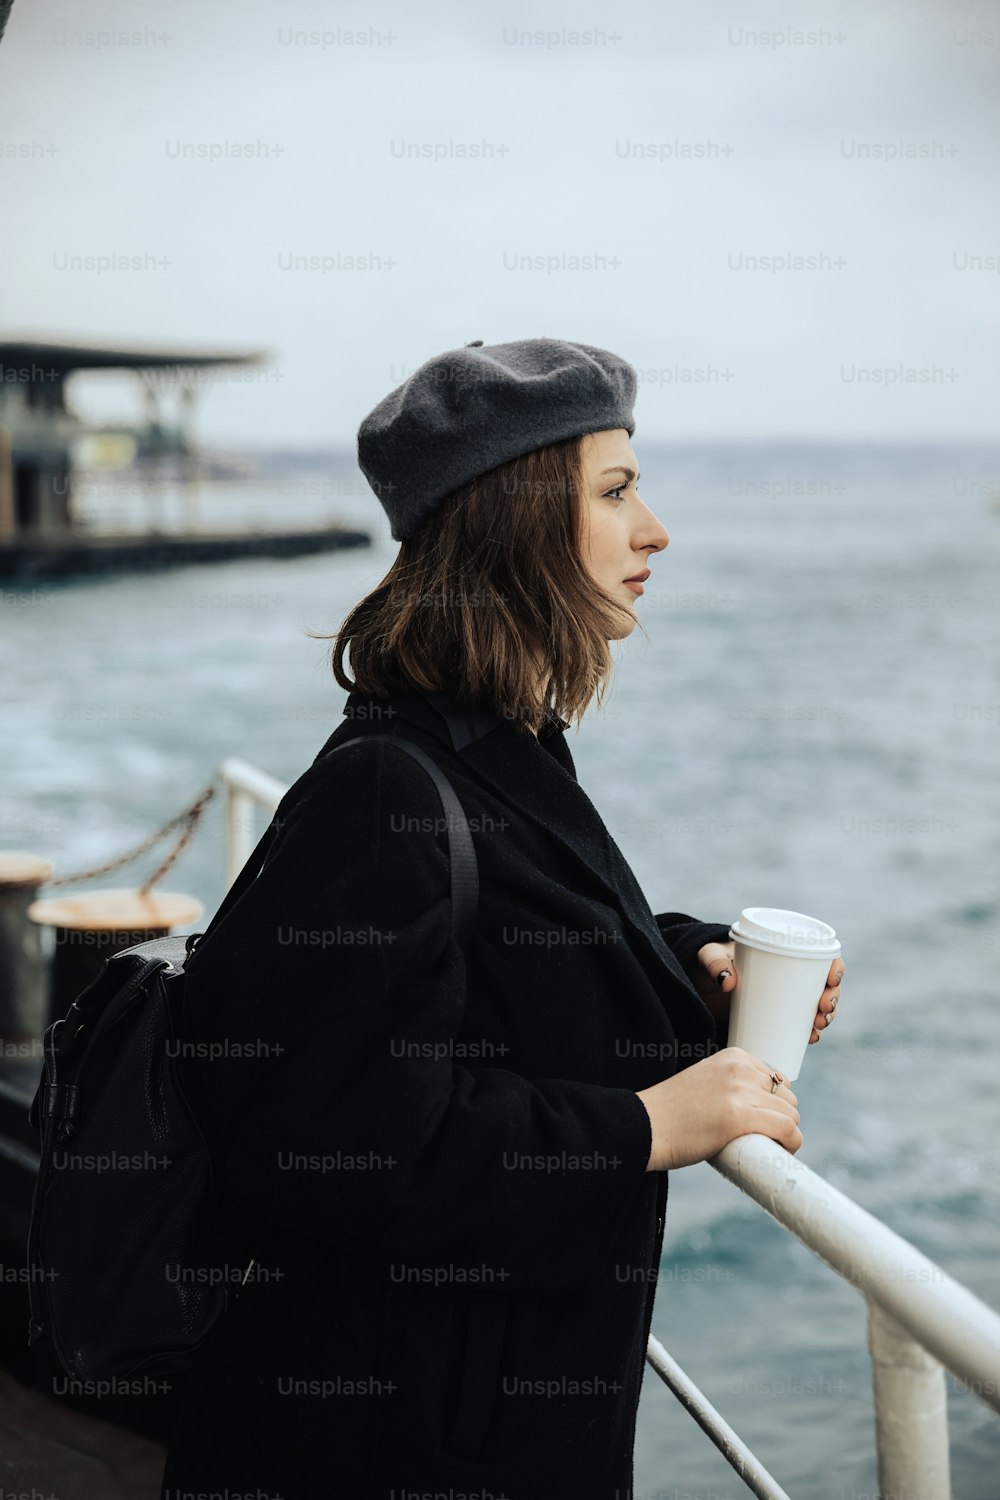 Una mujer parada en un bote sosteniendo una taza de café